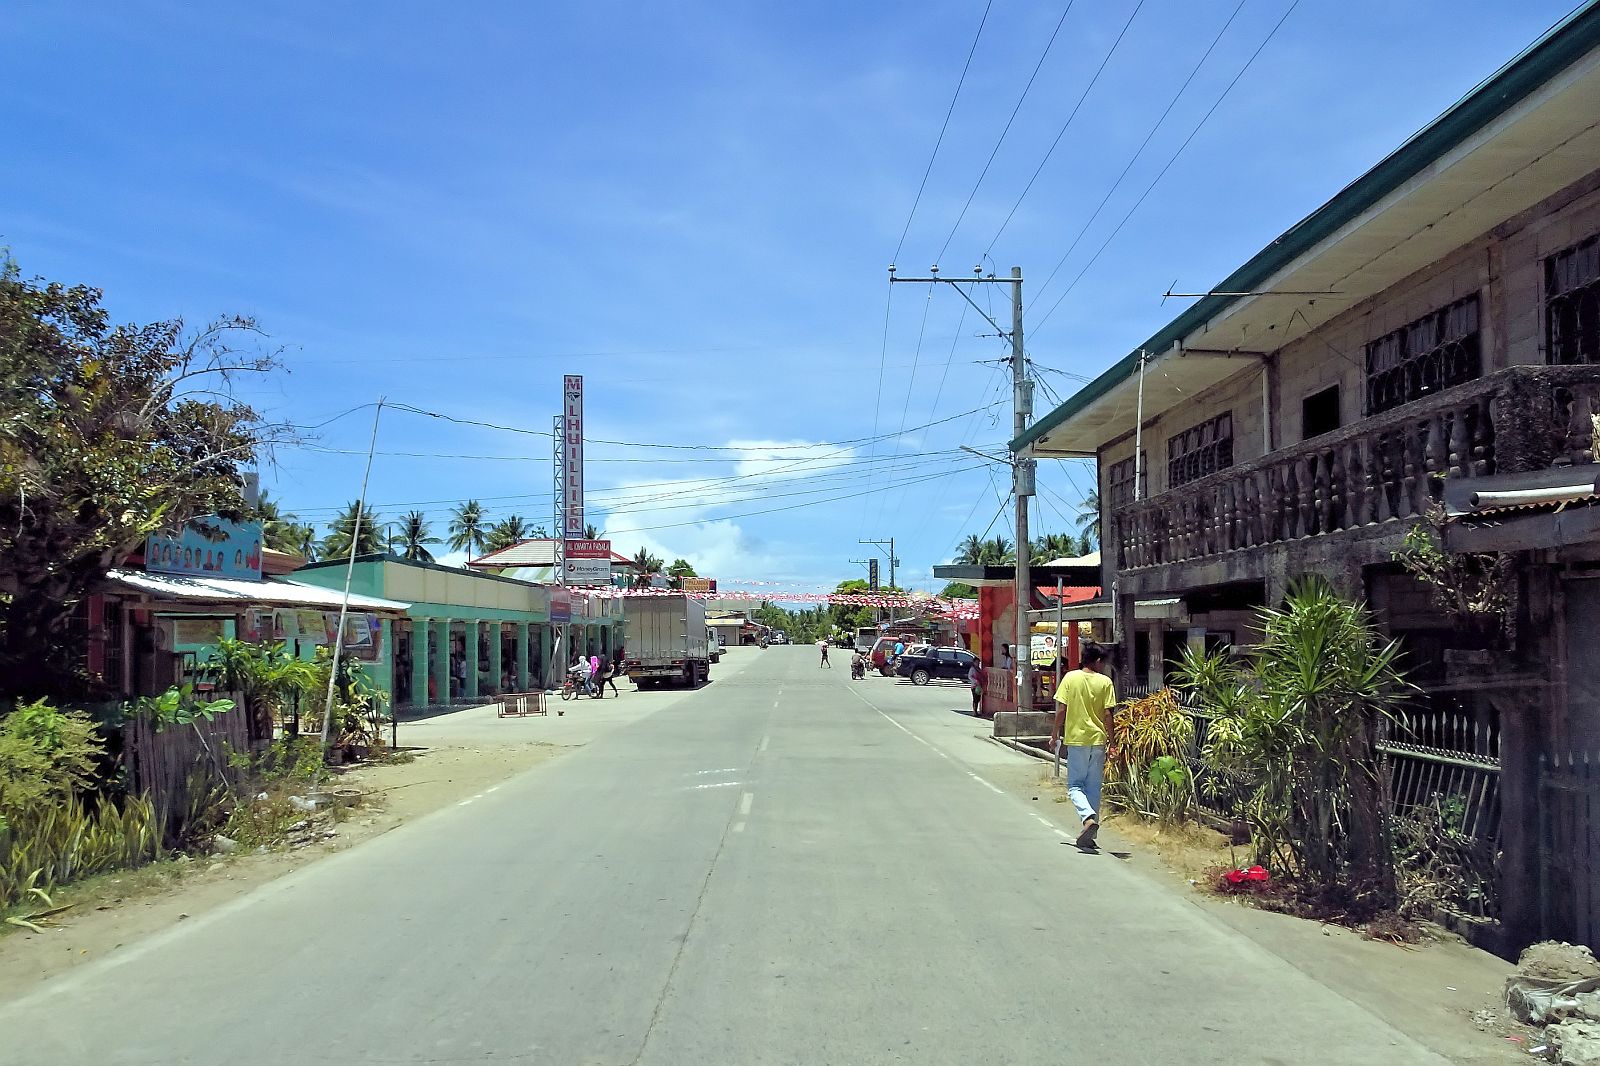 PHILIPPINEN REISEN - ORTE - BOHOL - Touristische Ortsbeschreibung für Mabini